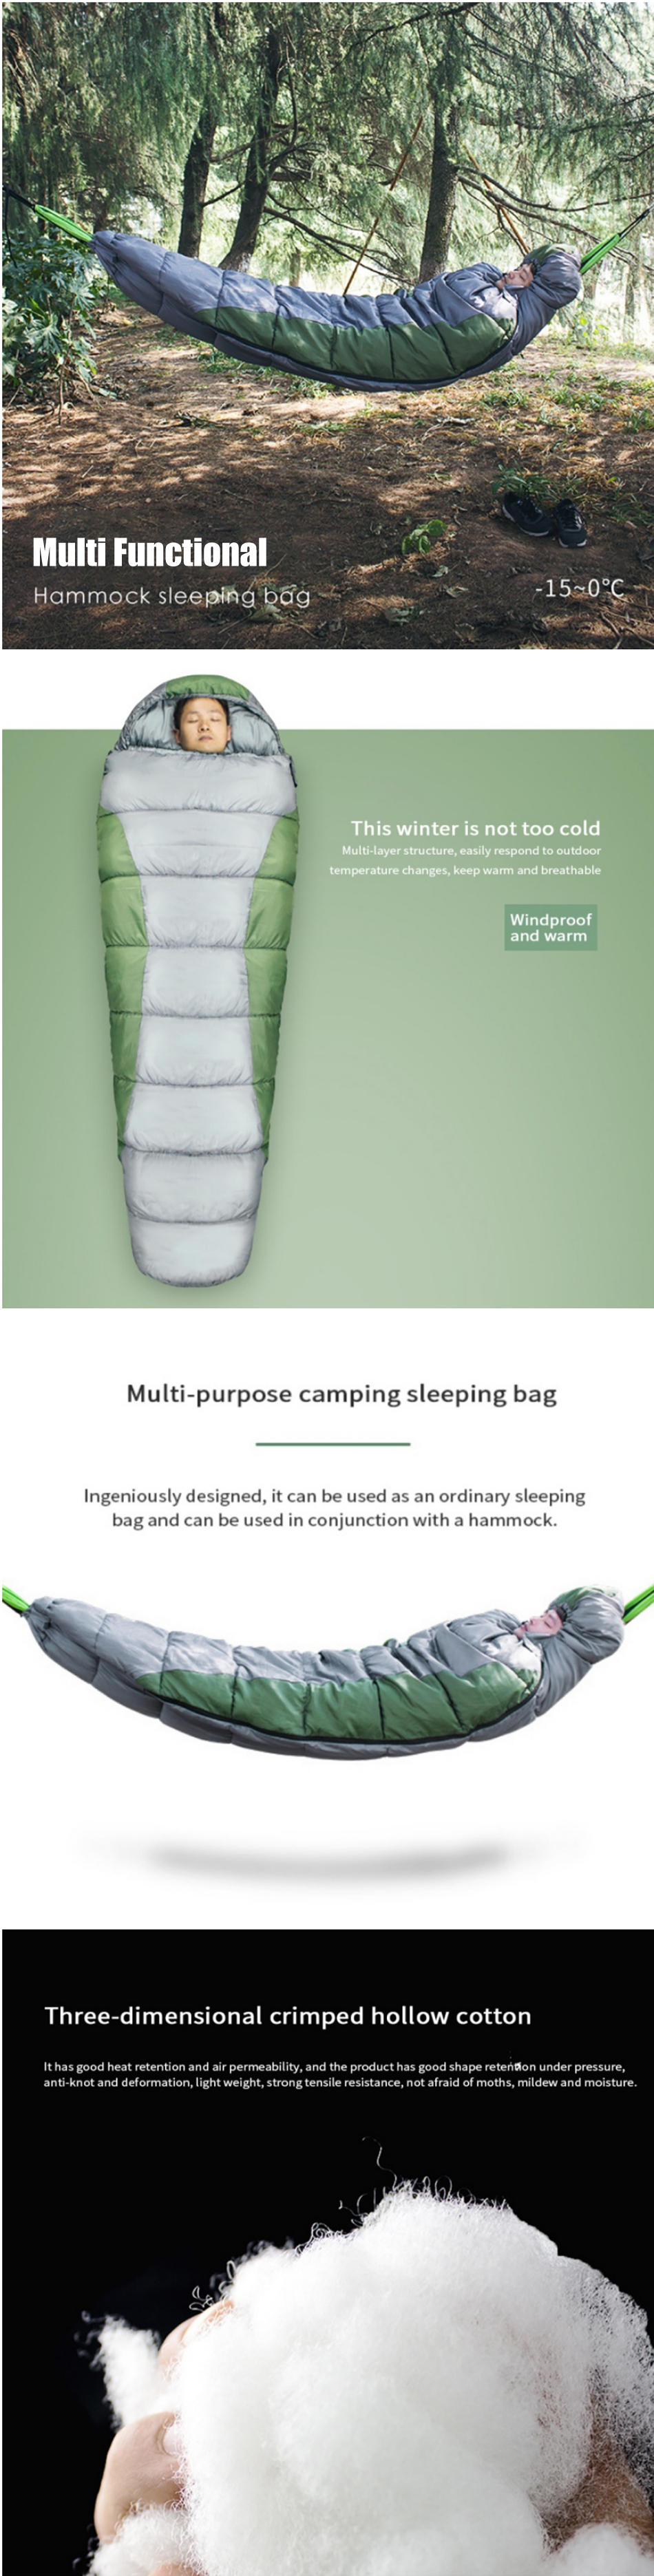 IPREEreg--15-0-Adult-Camping-Hiking-Sleeping-Bag-Lightweight-Down-Backpacking-Hammock-Sleep-Bag-Outd-1752854-1